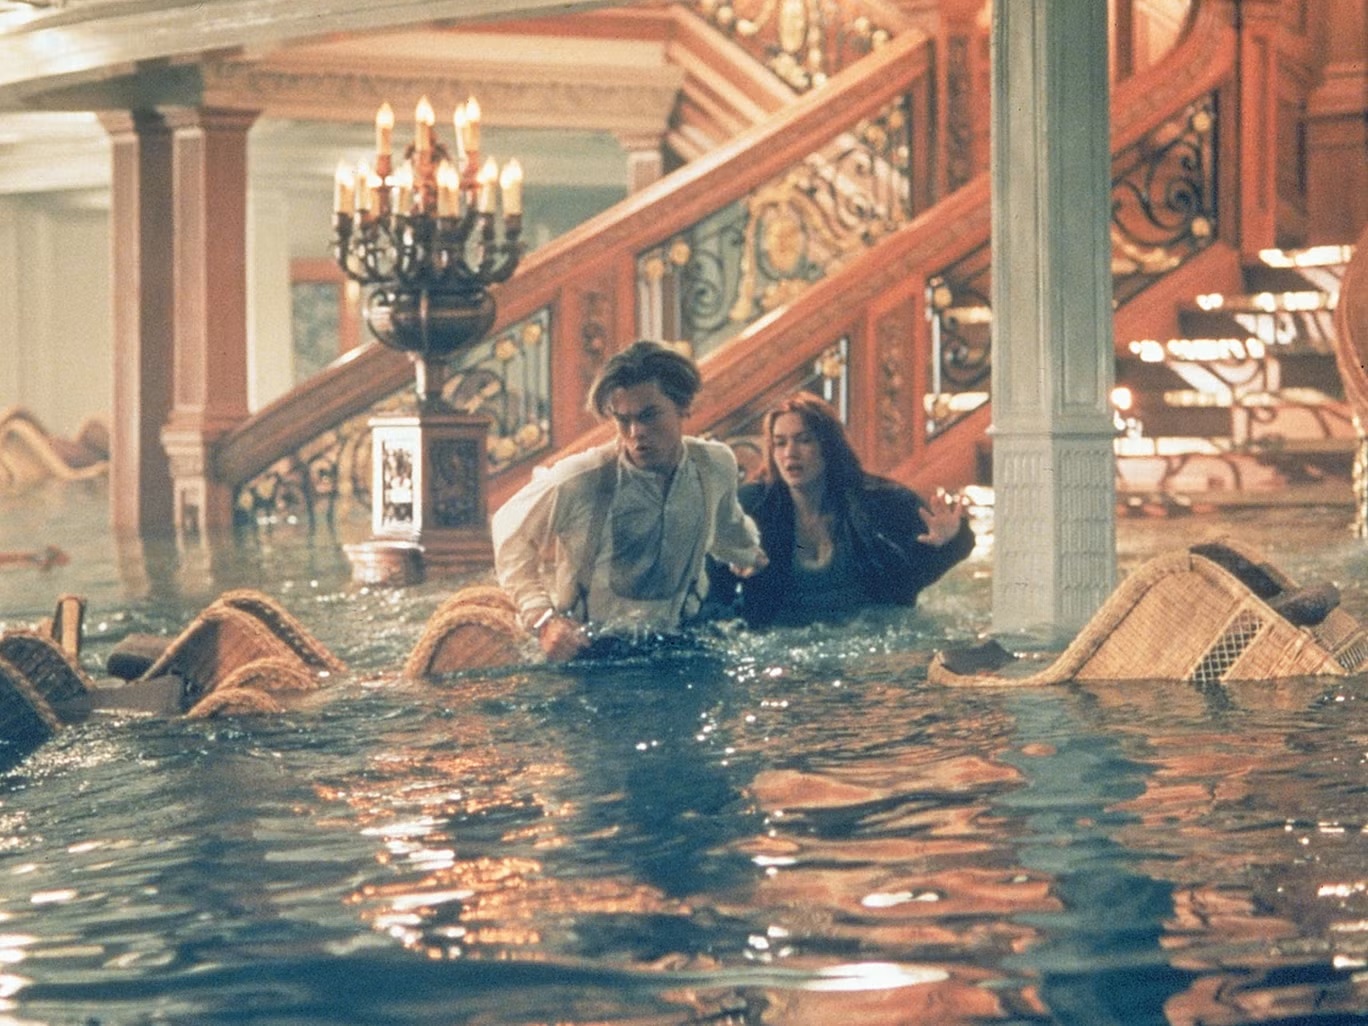 ليوناردو دي كابريو وكيت وينسلت في فيلم "تيتانيك" (فوكس/باراماونت)